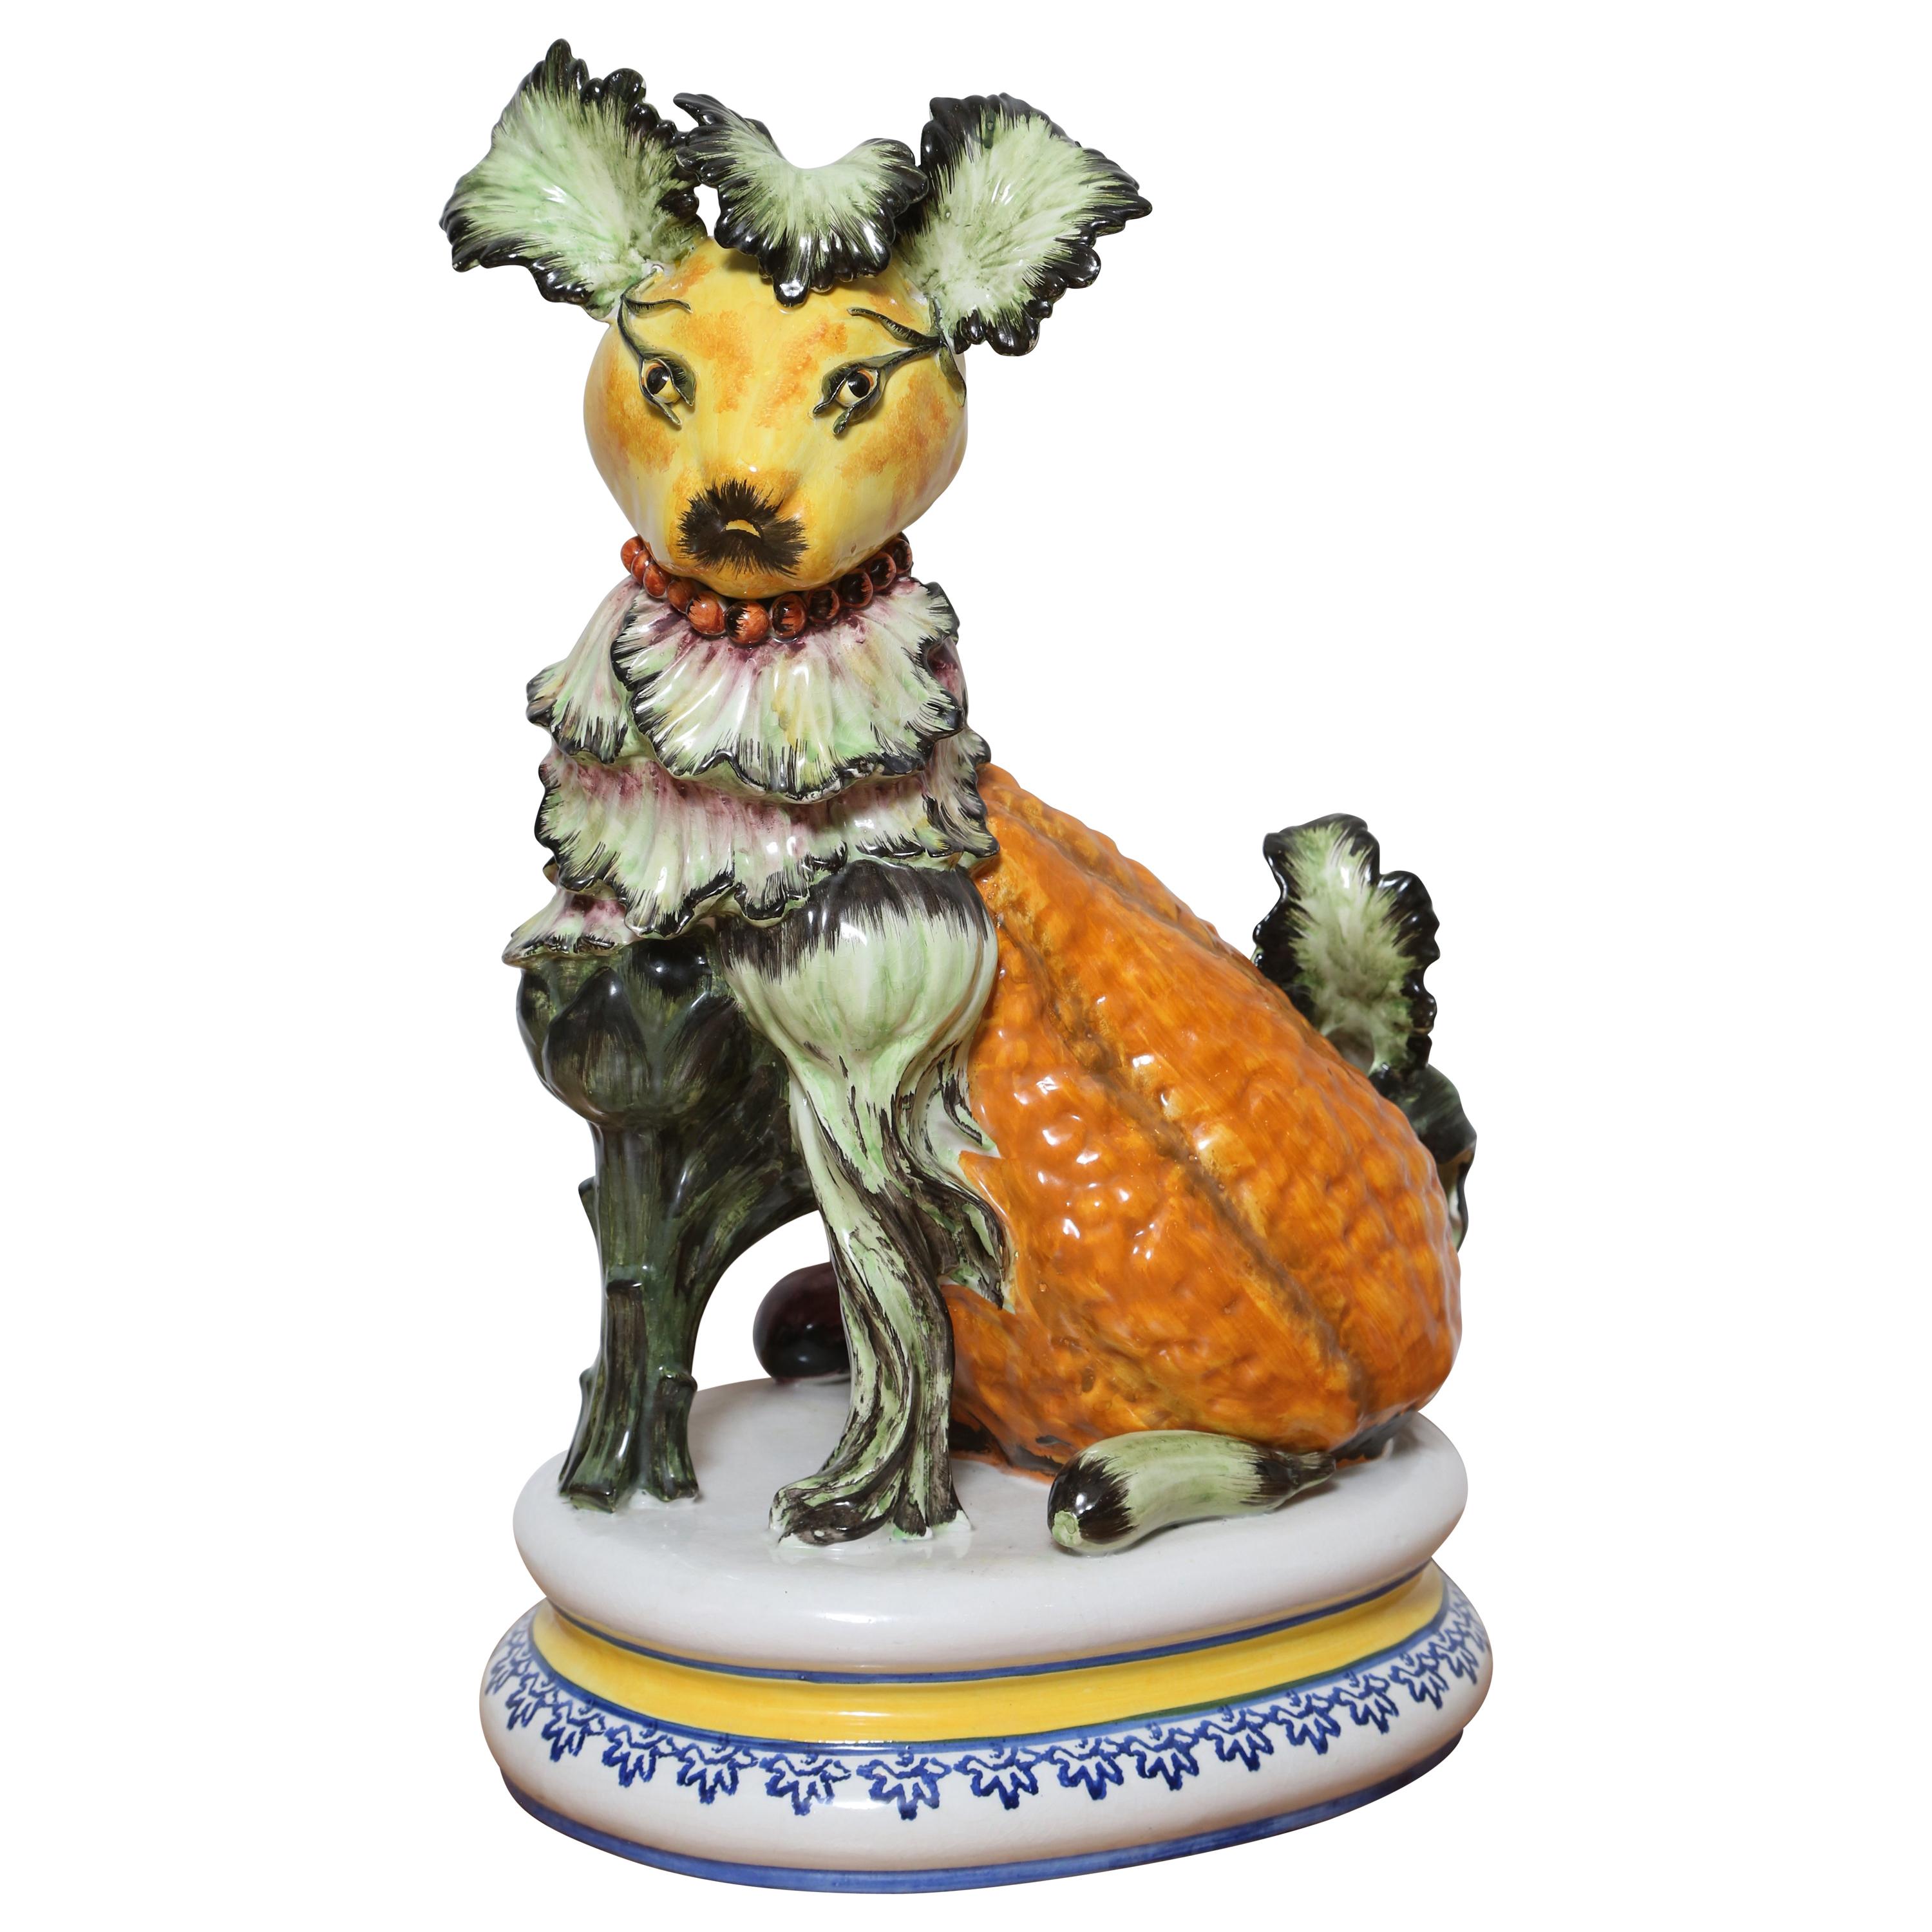 Ceramic "Vegetable" Dog For Sale